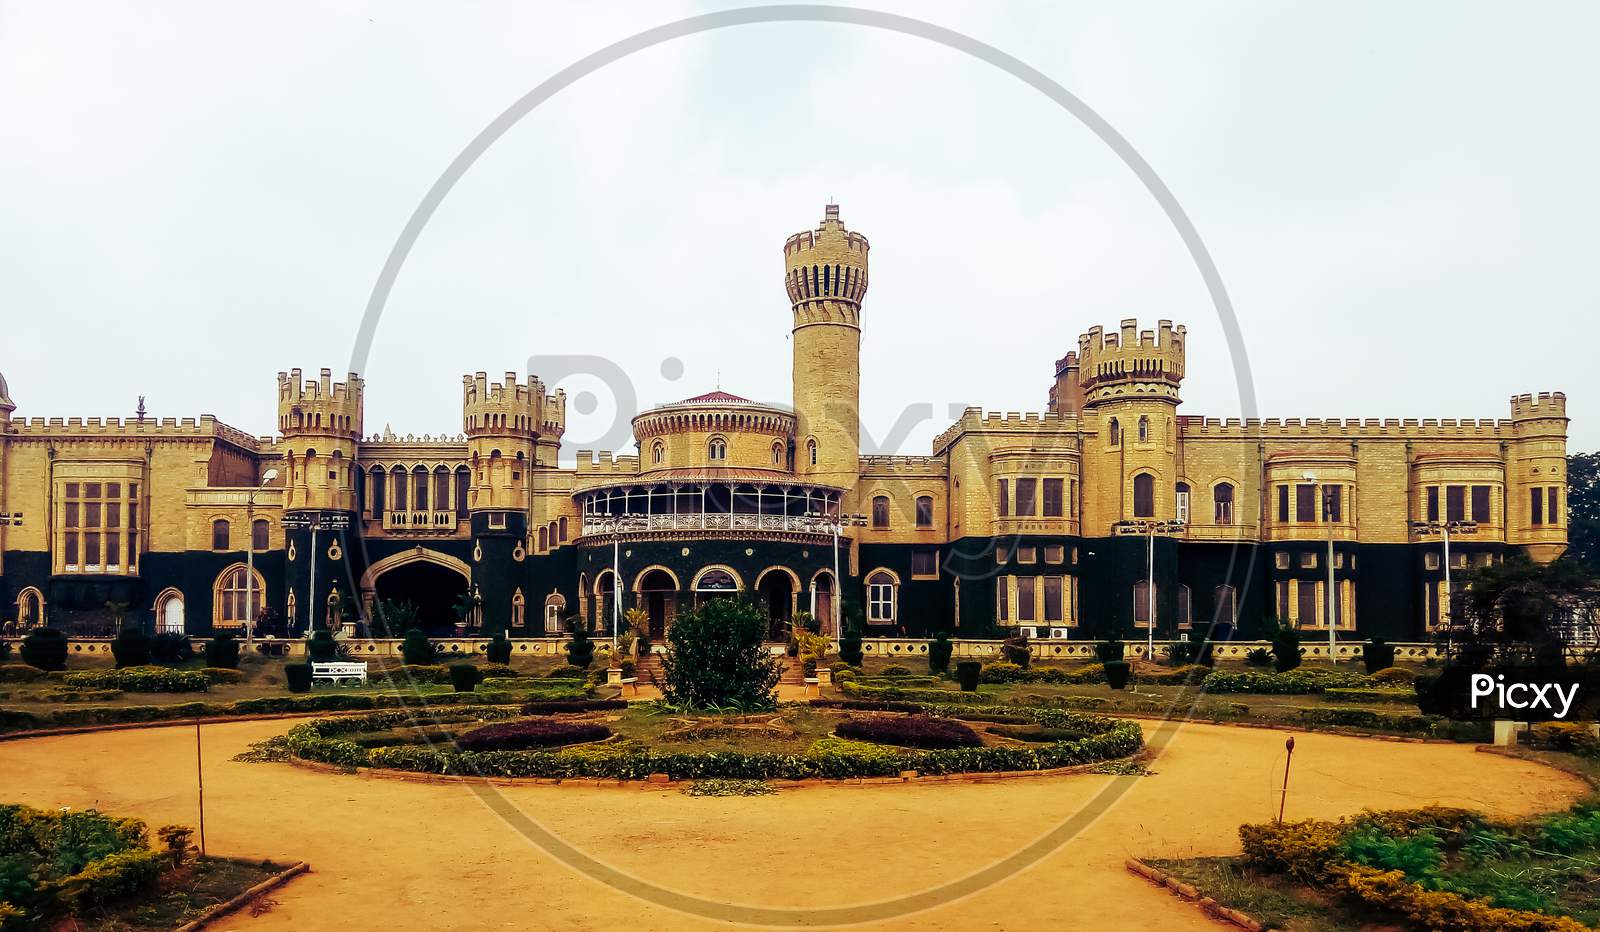 Bangalore palace jayamahal palace in Bangalore India, the exterior.